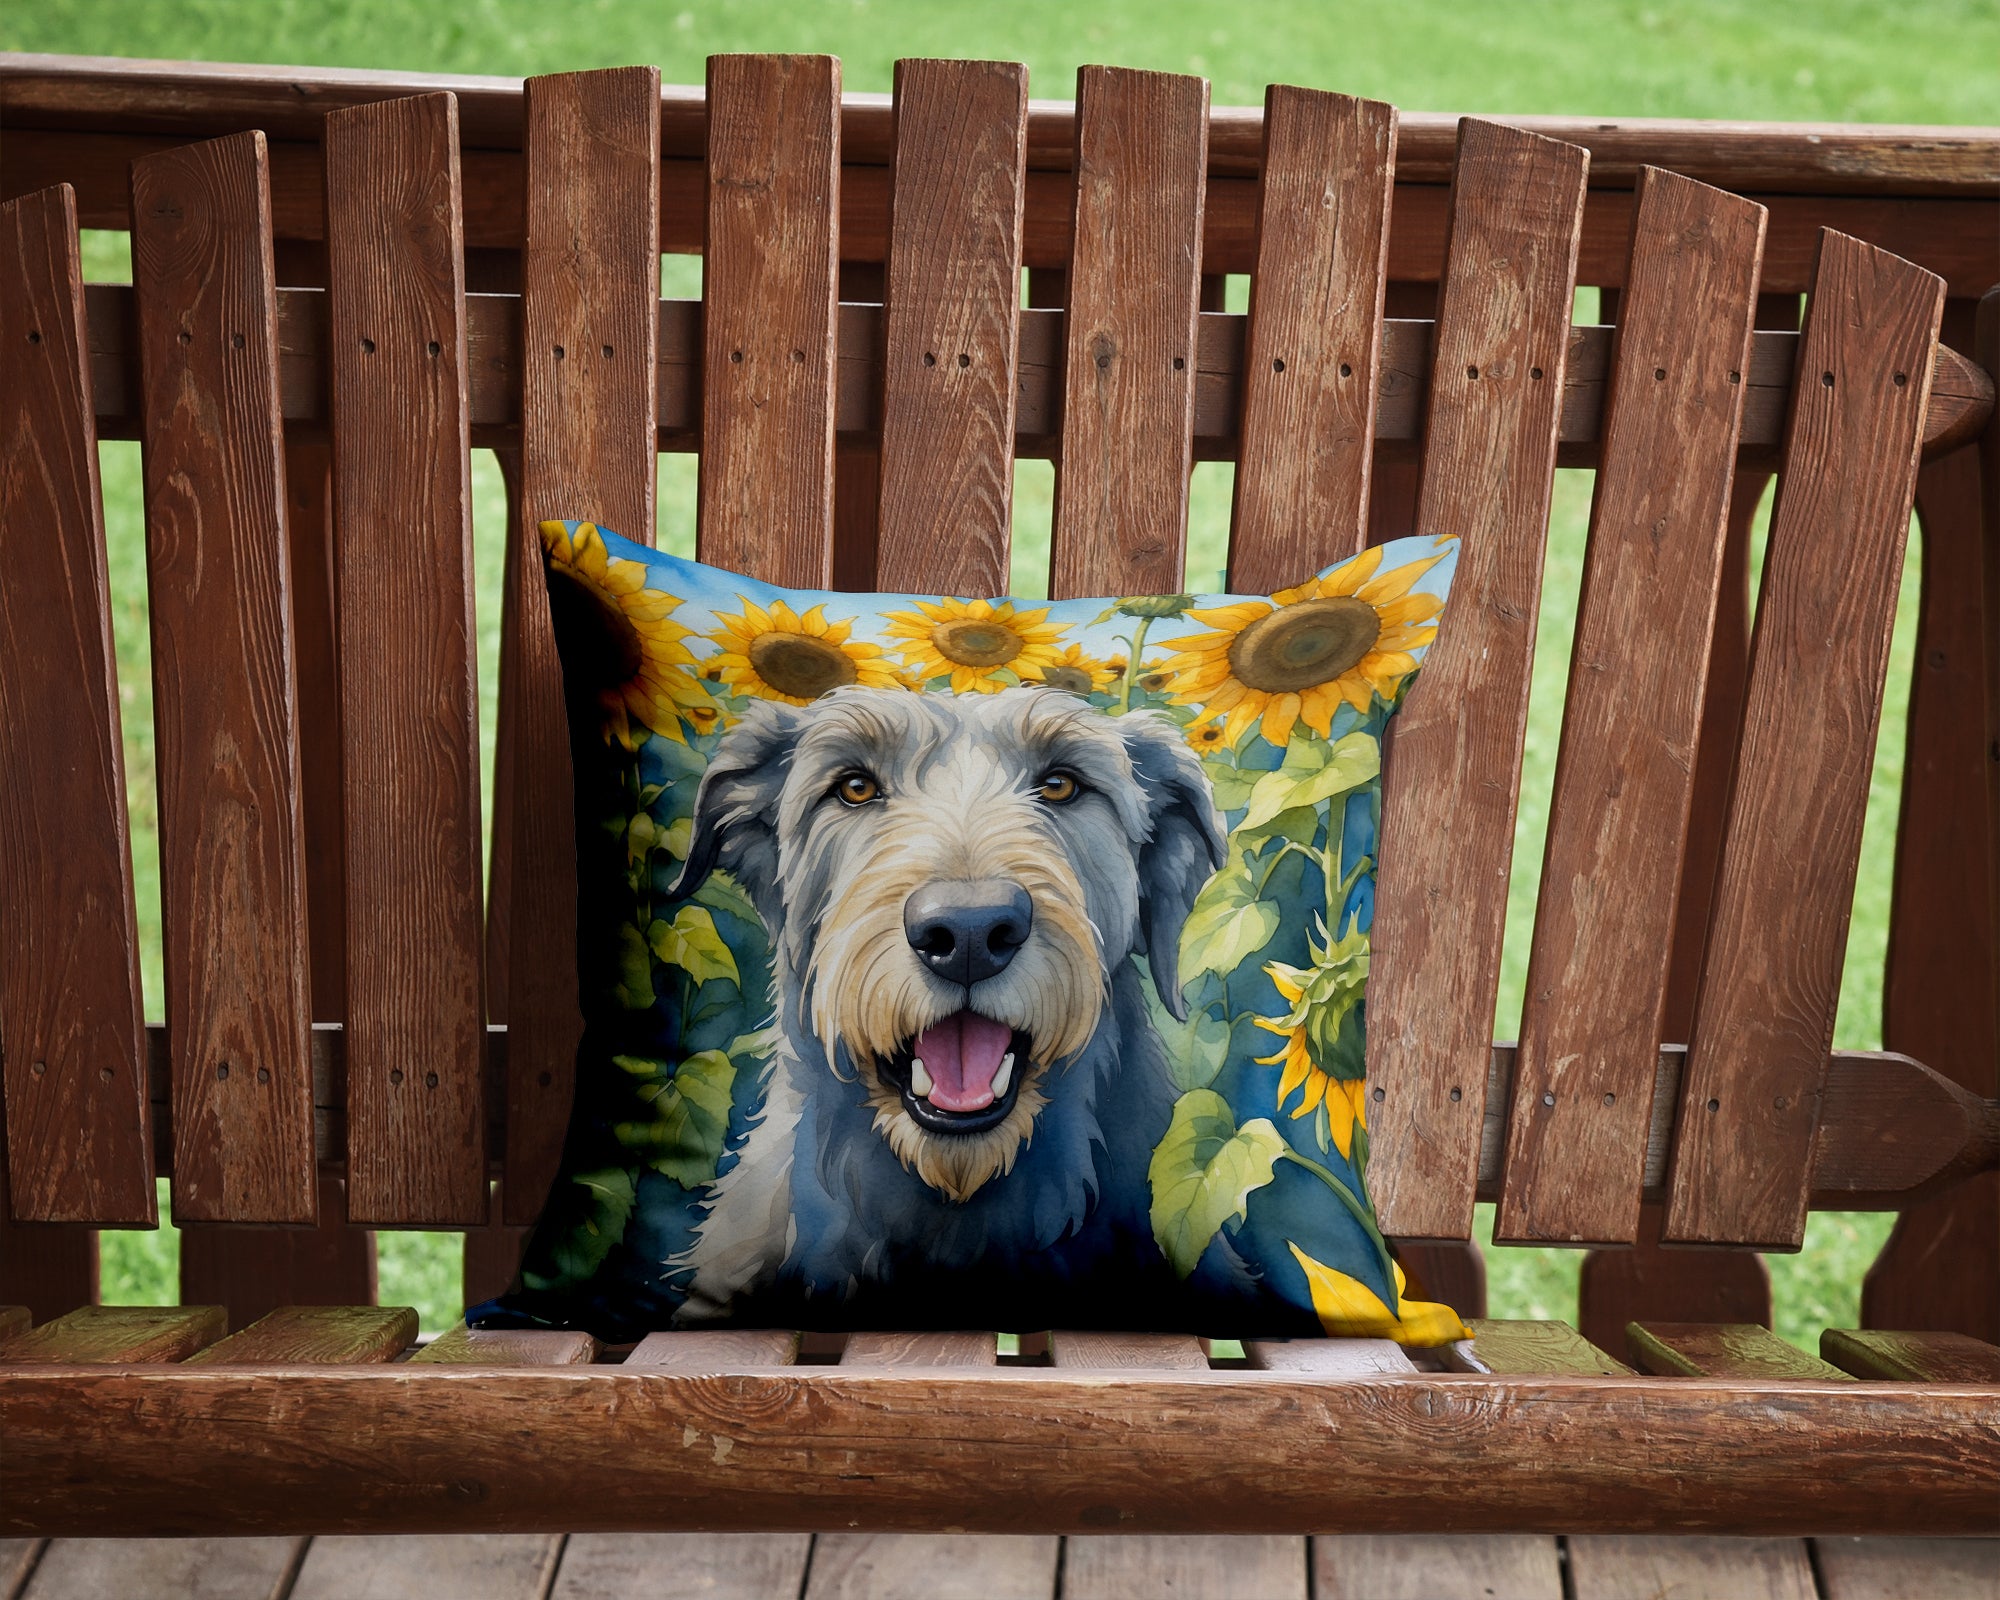 Buy this Irish Wolfhound in Sunflowers Throw Pillow